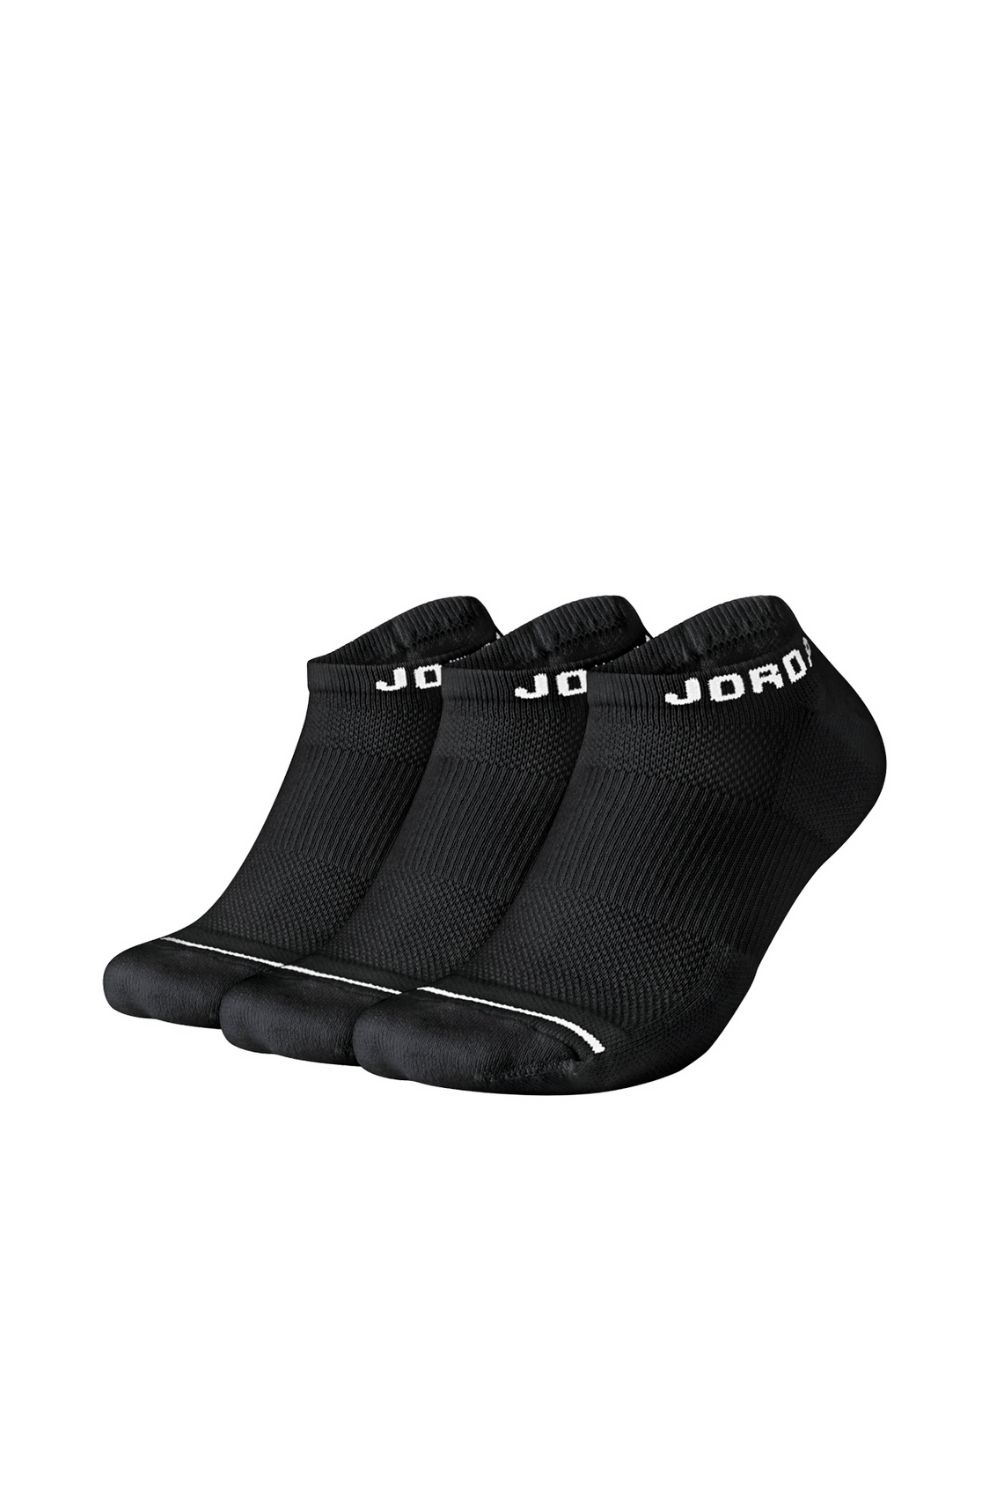 NIKE – Σετ unisex κάλτσες Nike JUMPMAN NO-SHOW μαύρες 1514214.1-0071